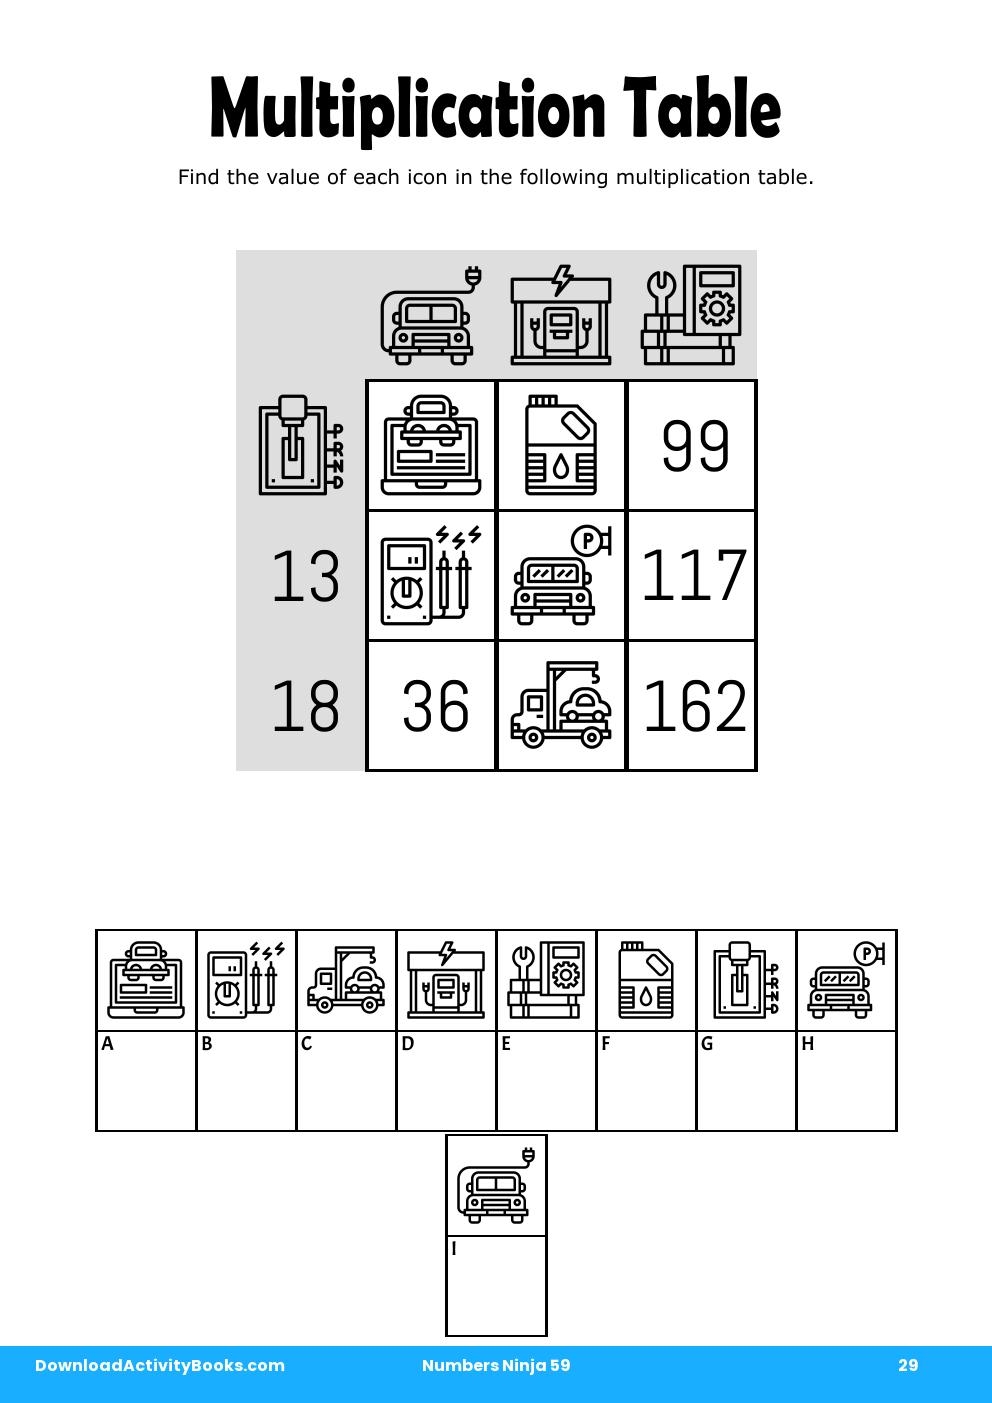 Multiplication Table in Numbers Ninja 59